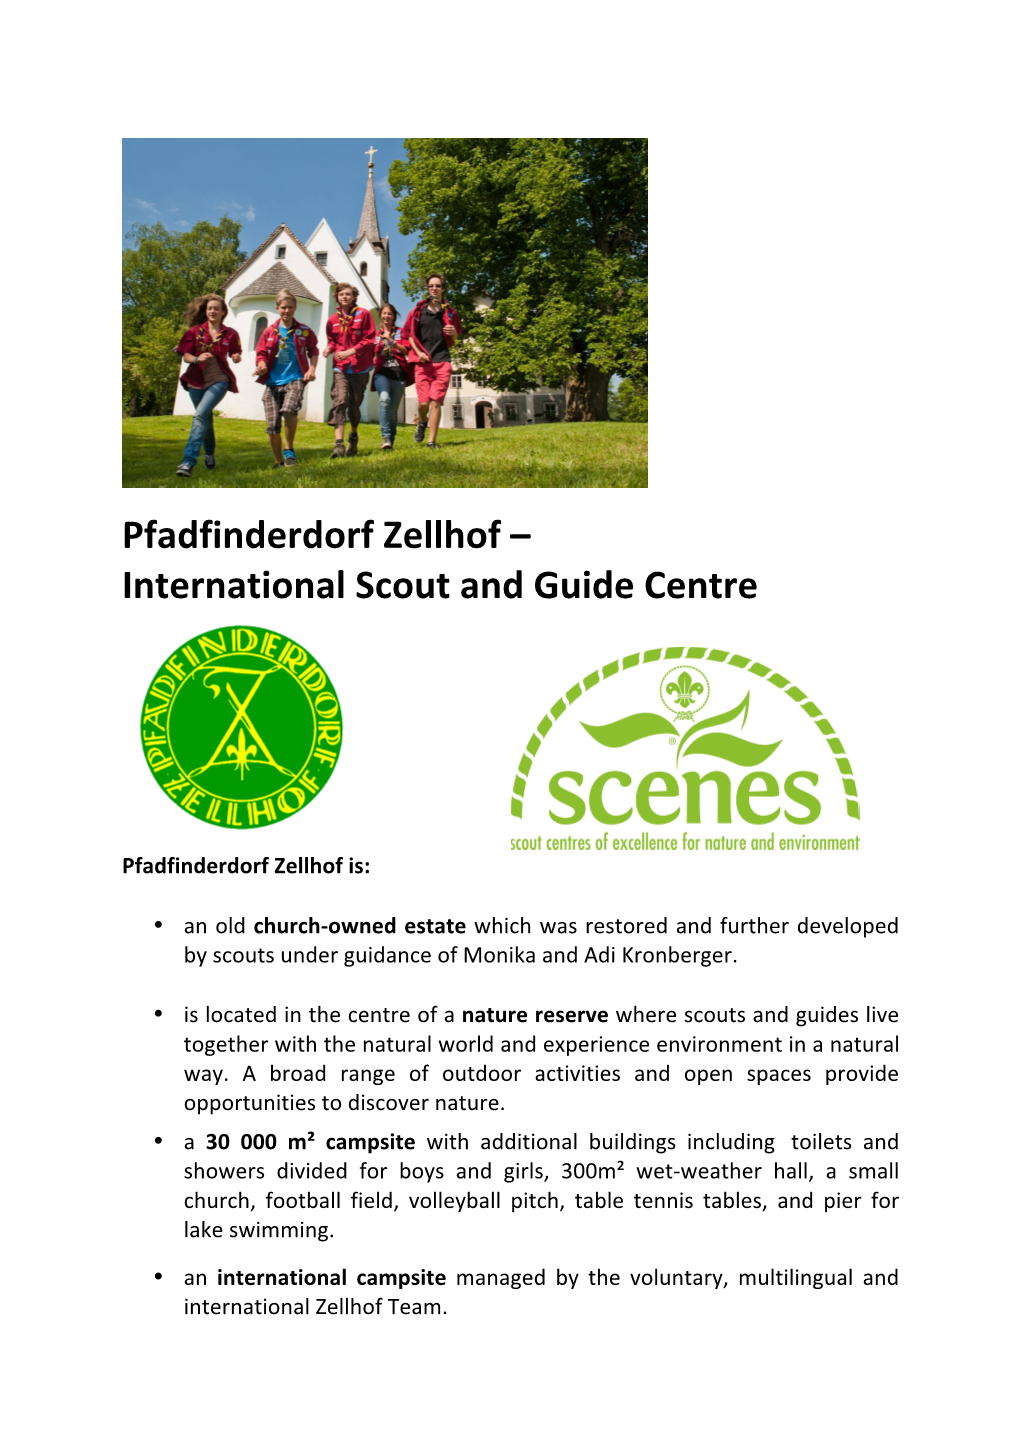 Pfadfinderdorf Zellhof – International Scout and Guide Centre